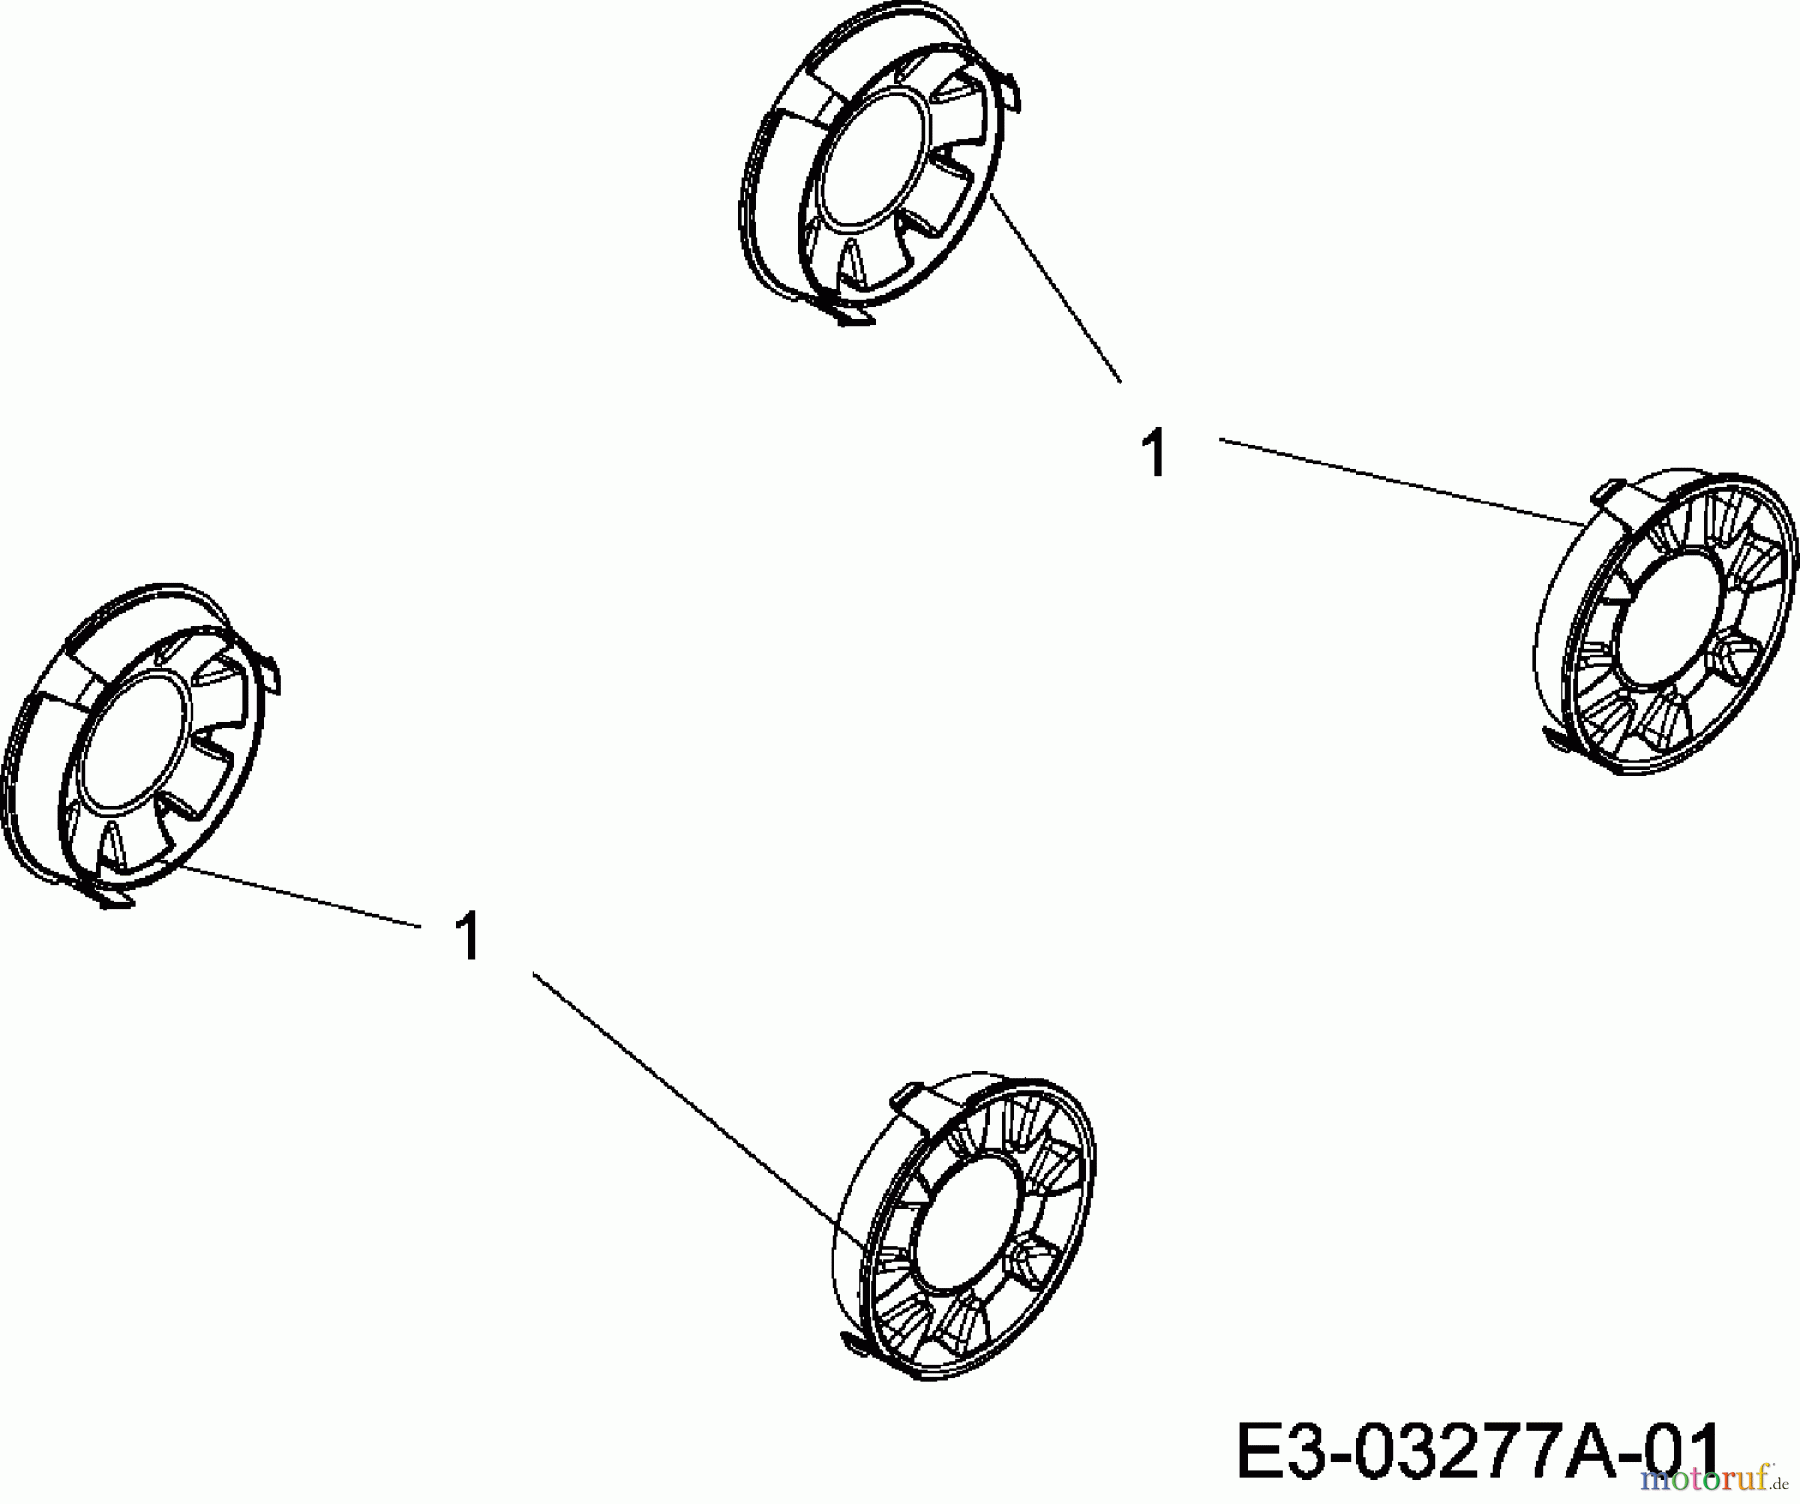  MTD Elektromäher E 40 W 18C-N4S-678  (2007) Radkappen